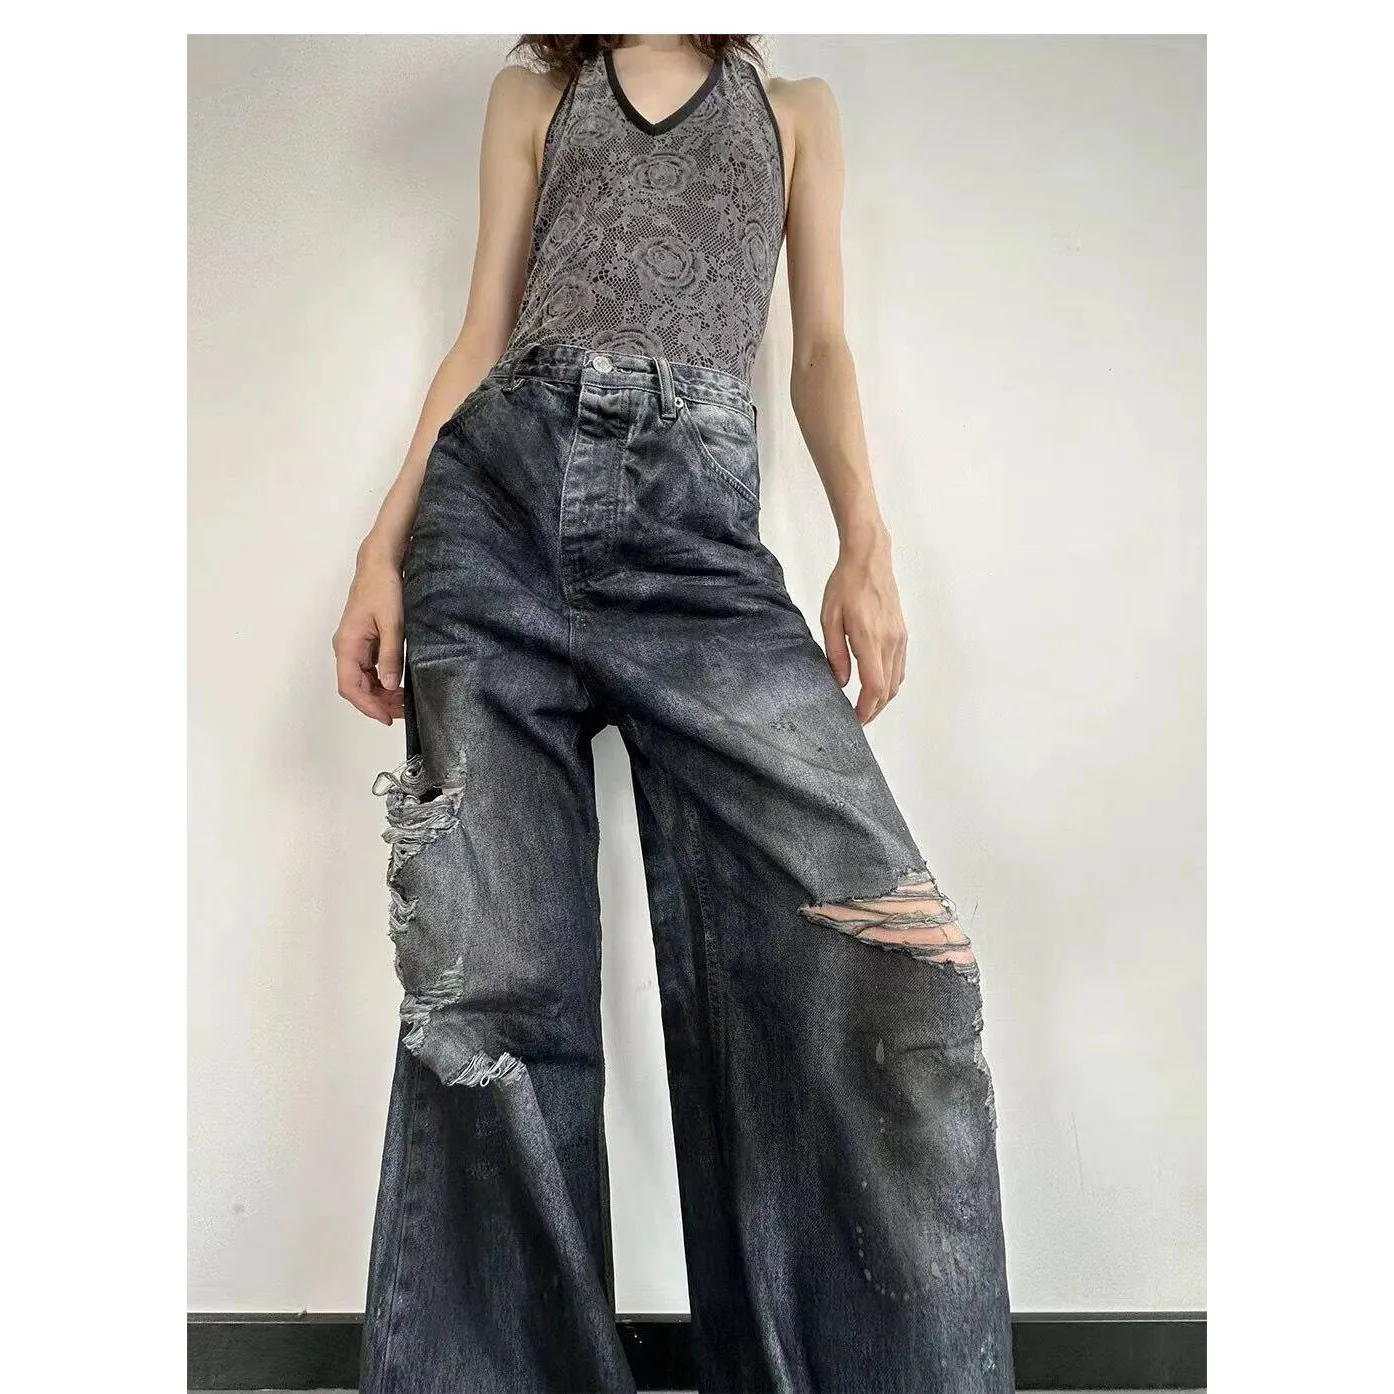 A8802 Mode lässig damen lange Hosen Übergröße Ausschnitt breite Beine Hosen lässig Damen Jeans